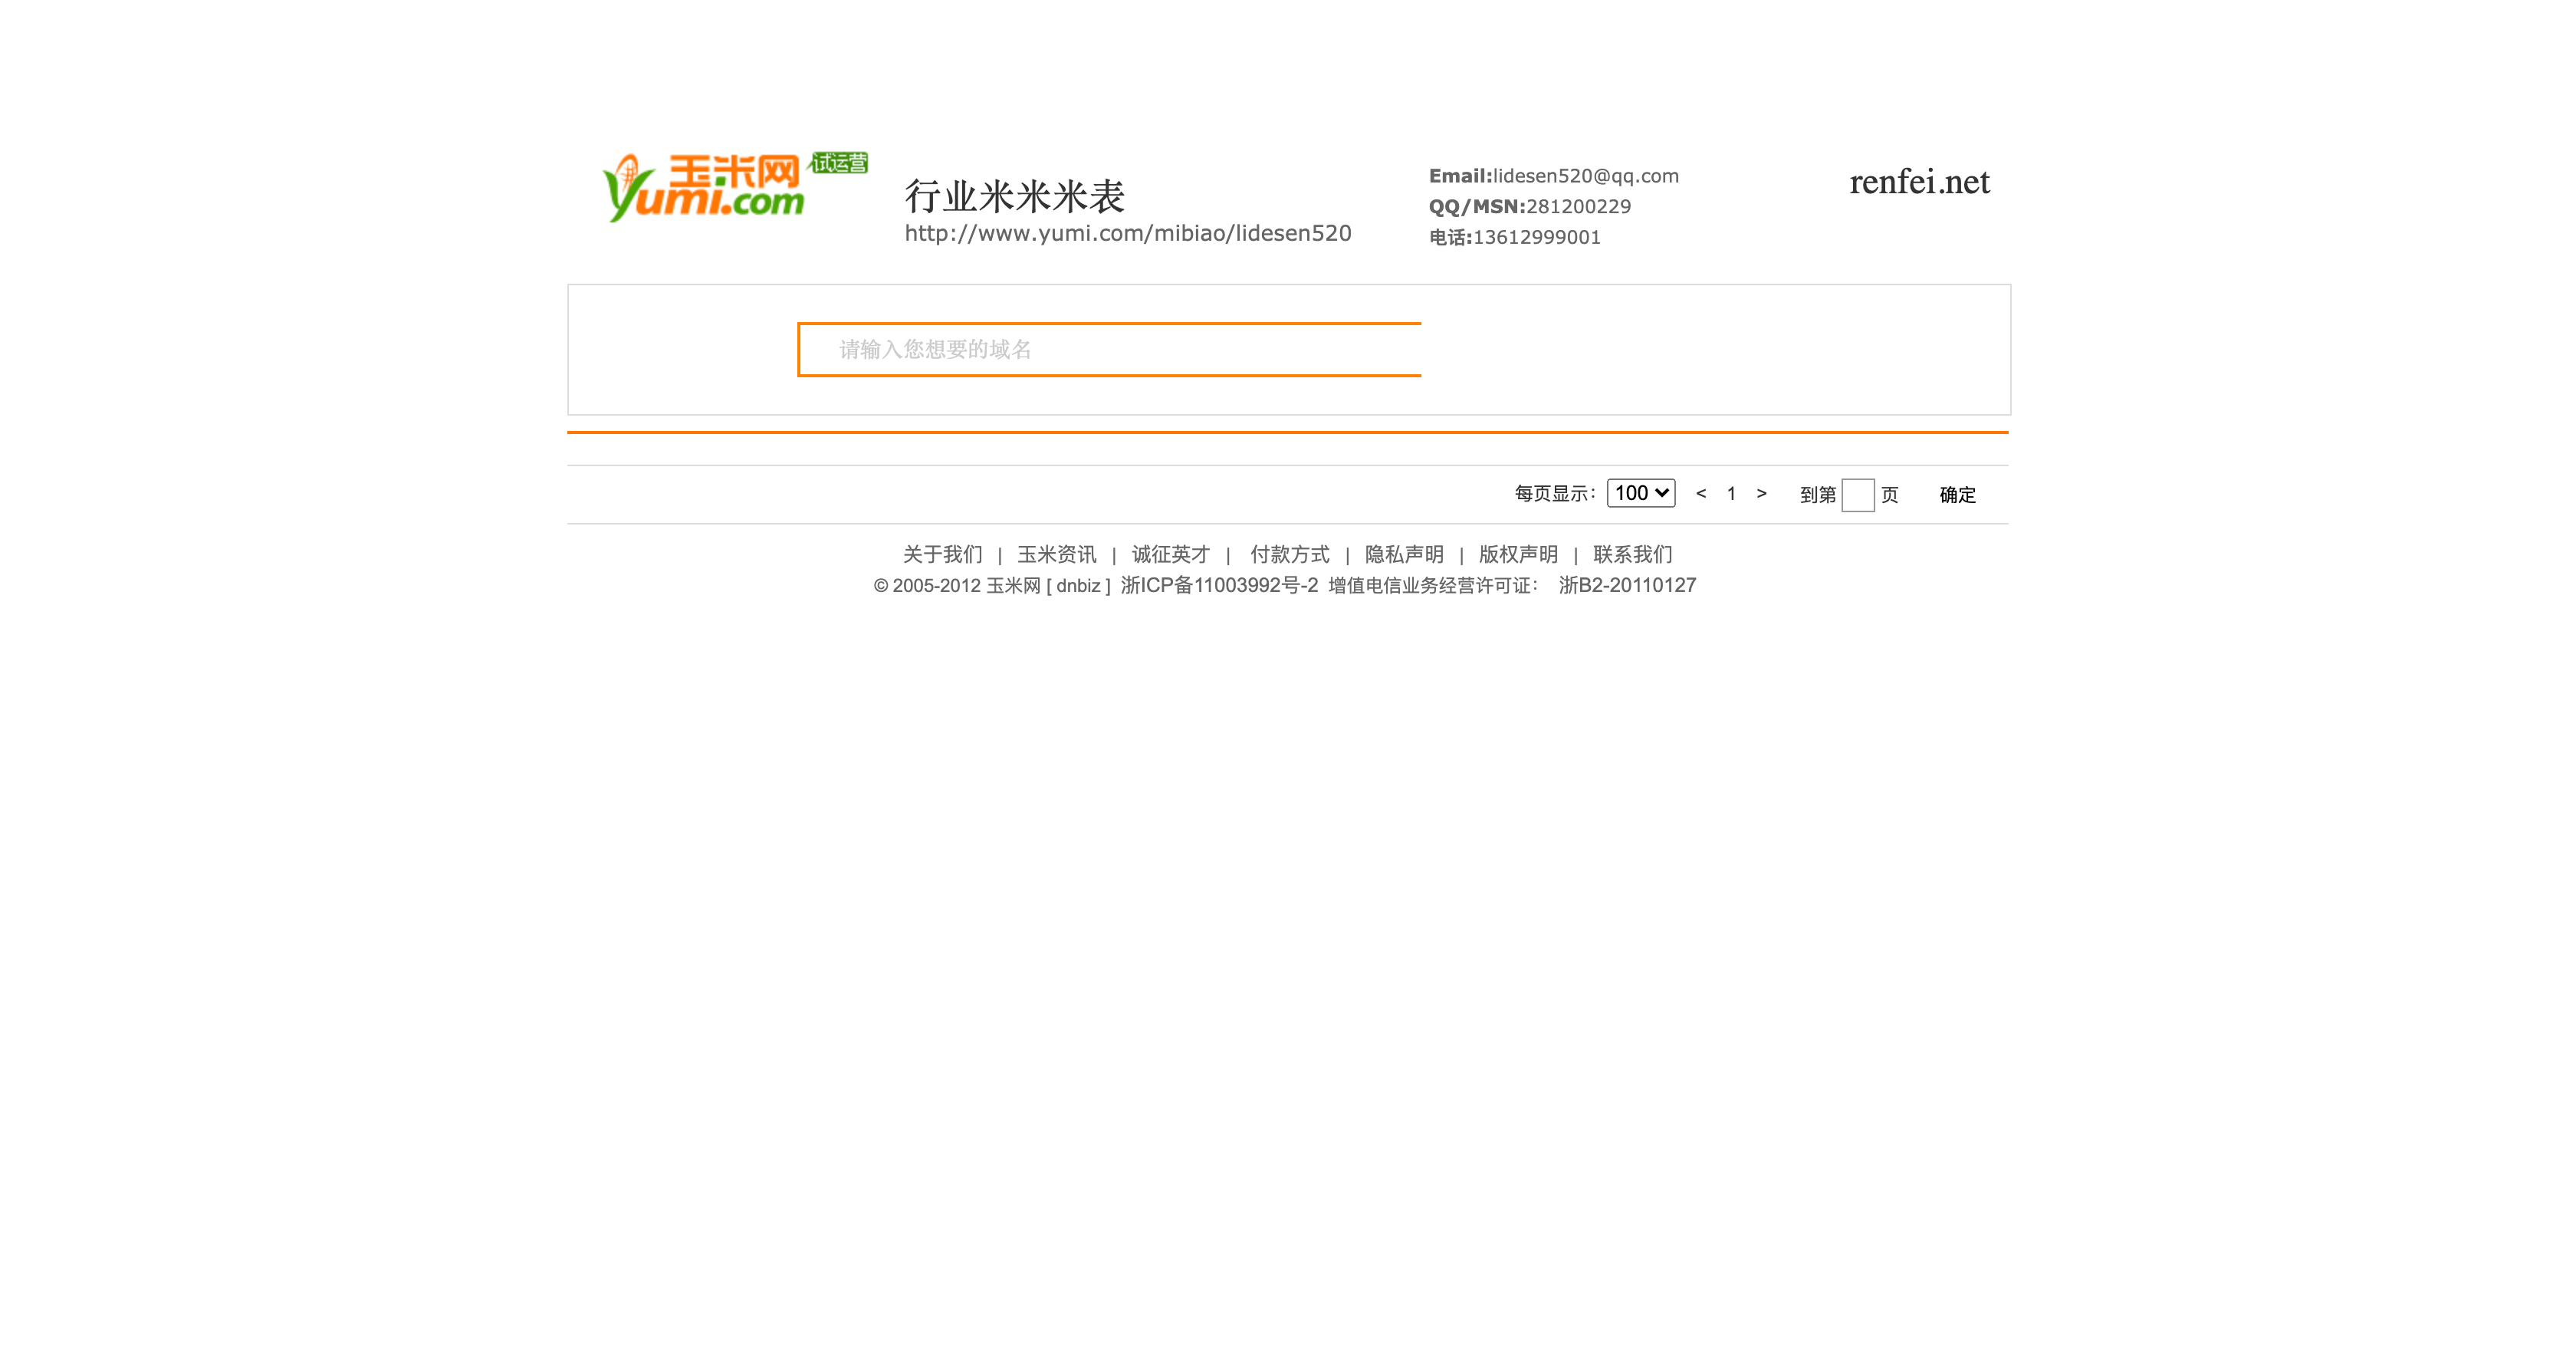 renfei.net在2013年的首页